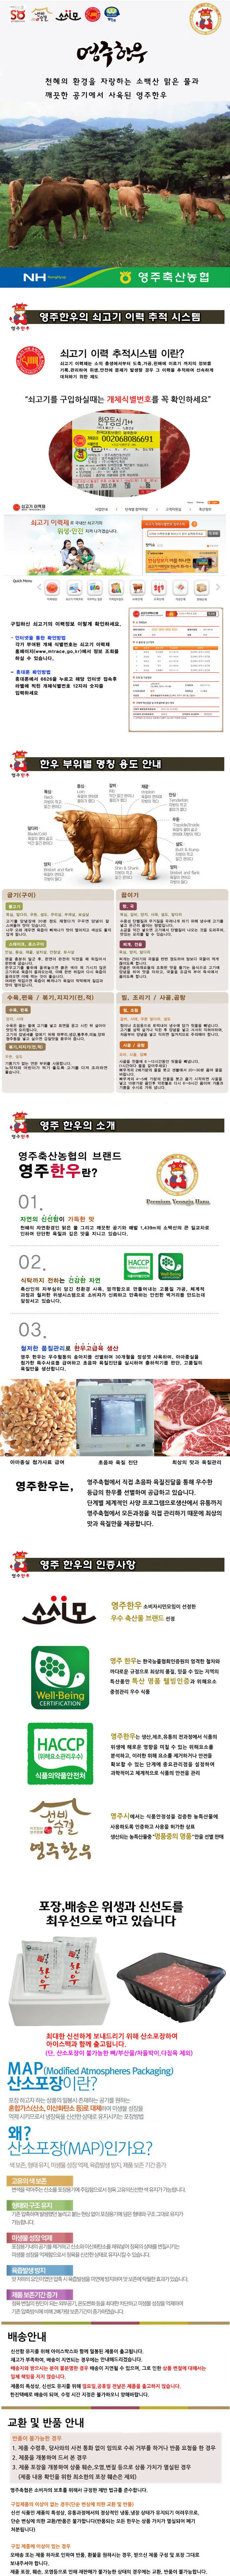 [고국배송] 영주한우 알뜰세트3호 (불고기1.2kg + 국거리600g + 산적600g)